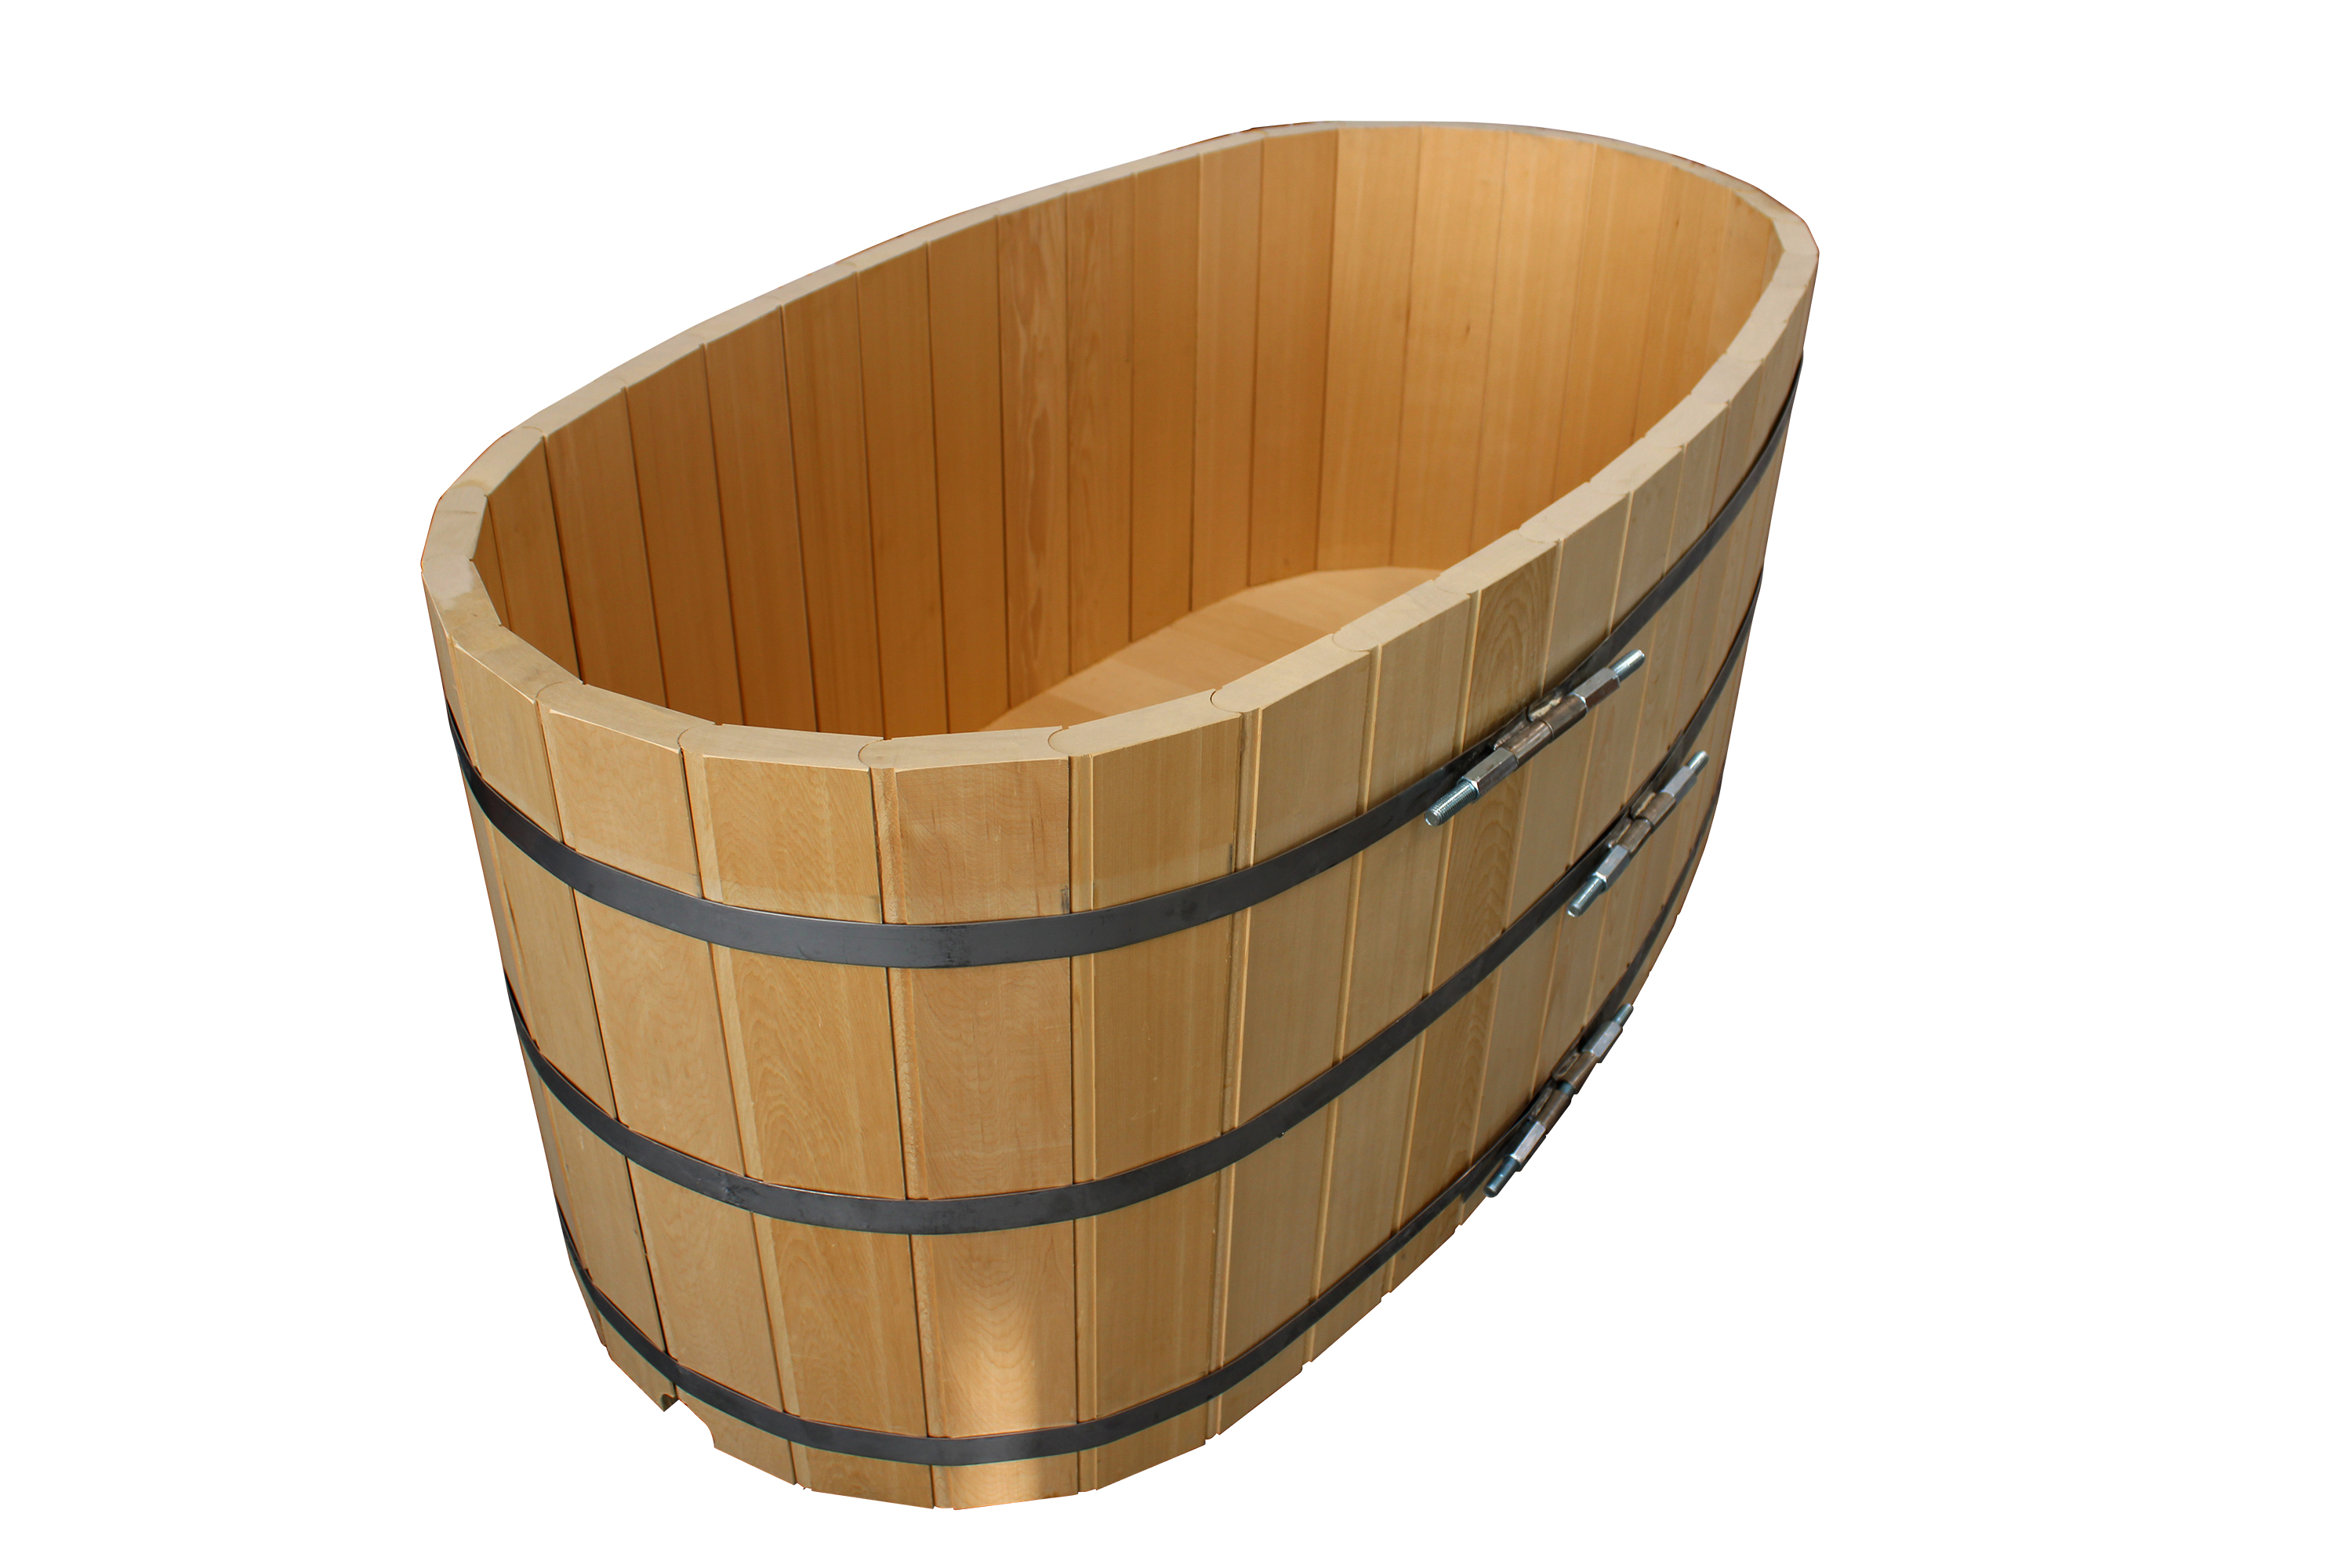 Yellow Cedar Wood Ofuro Soaking Tub for 2 - Electric Heater